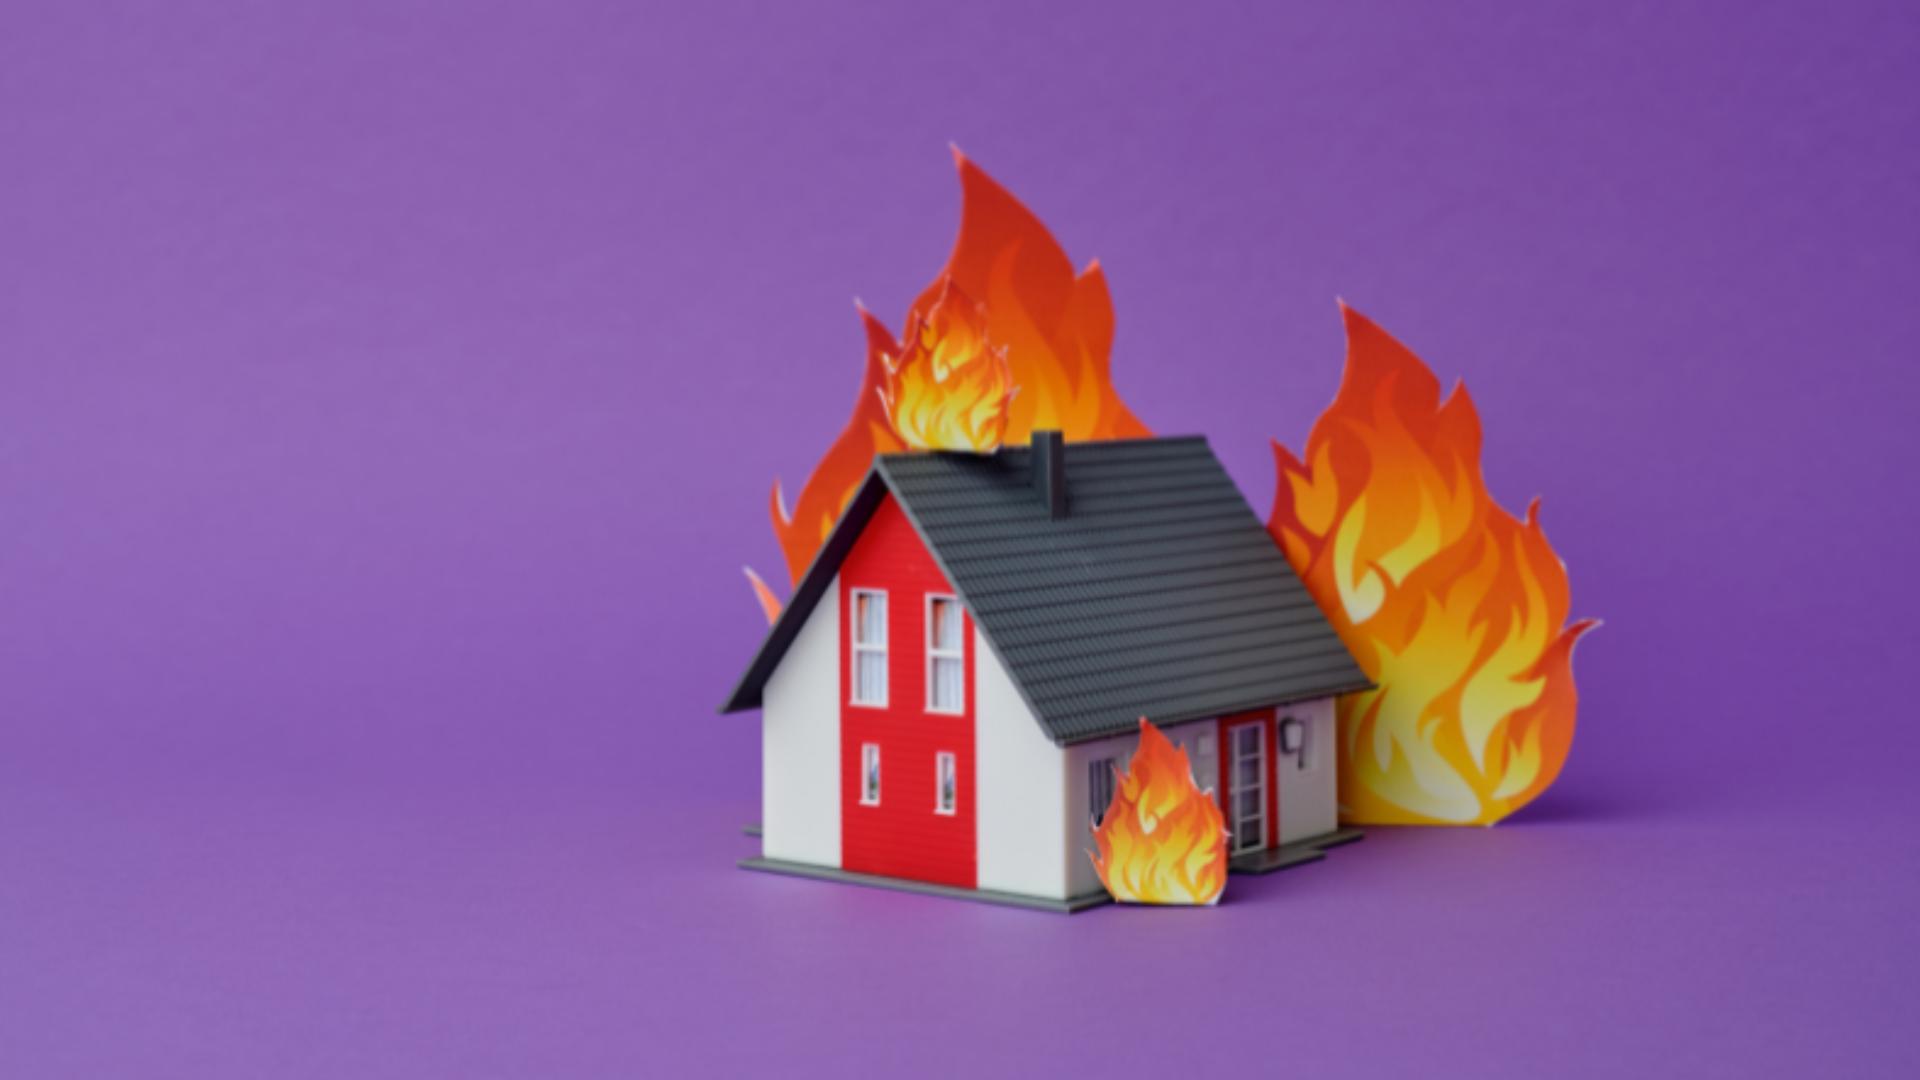 casinha de papel em chamas sem seguro incêndio